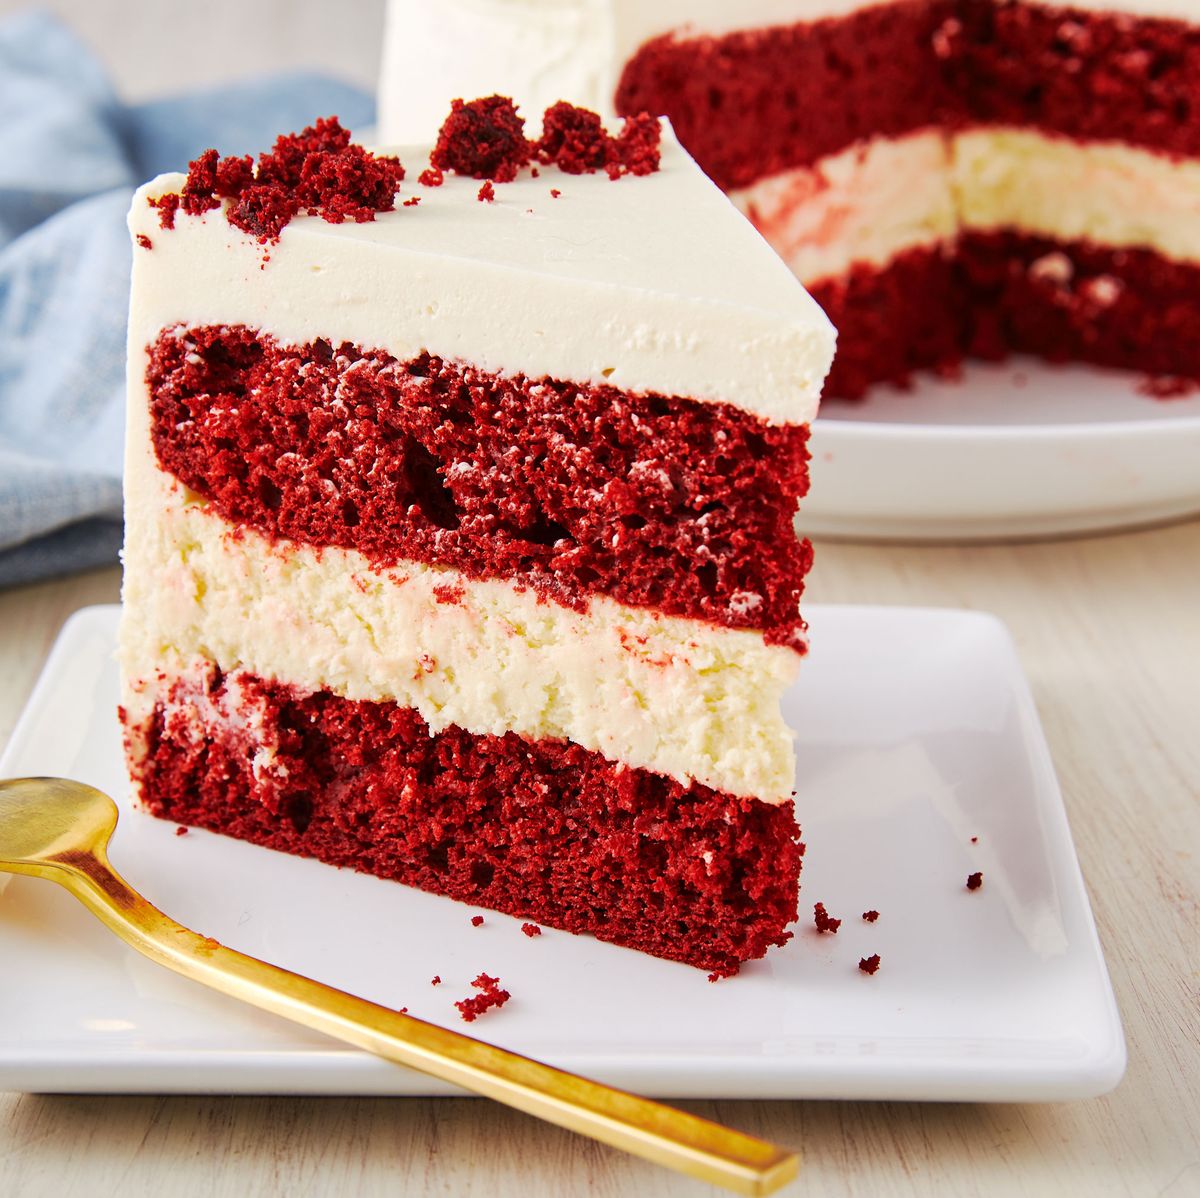 Best Recipe - How Make Red Velvet Cheesecake